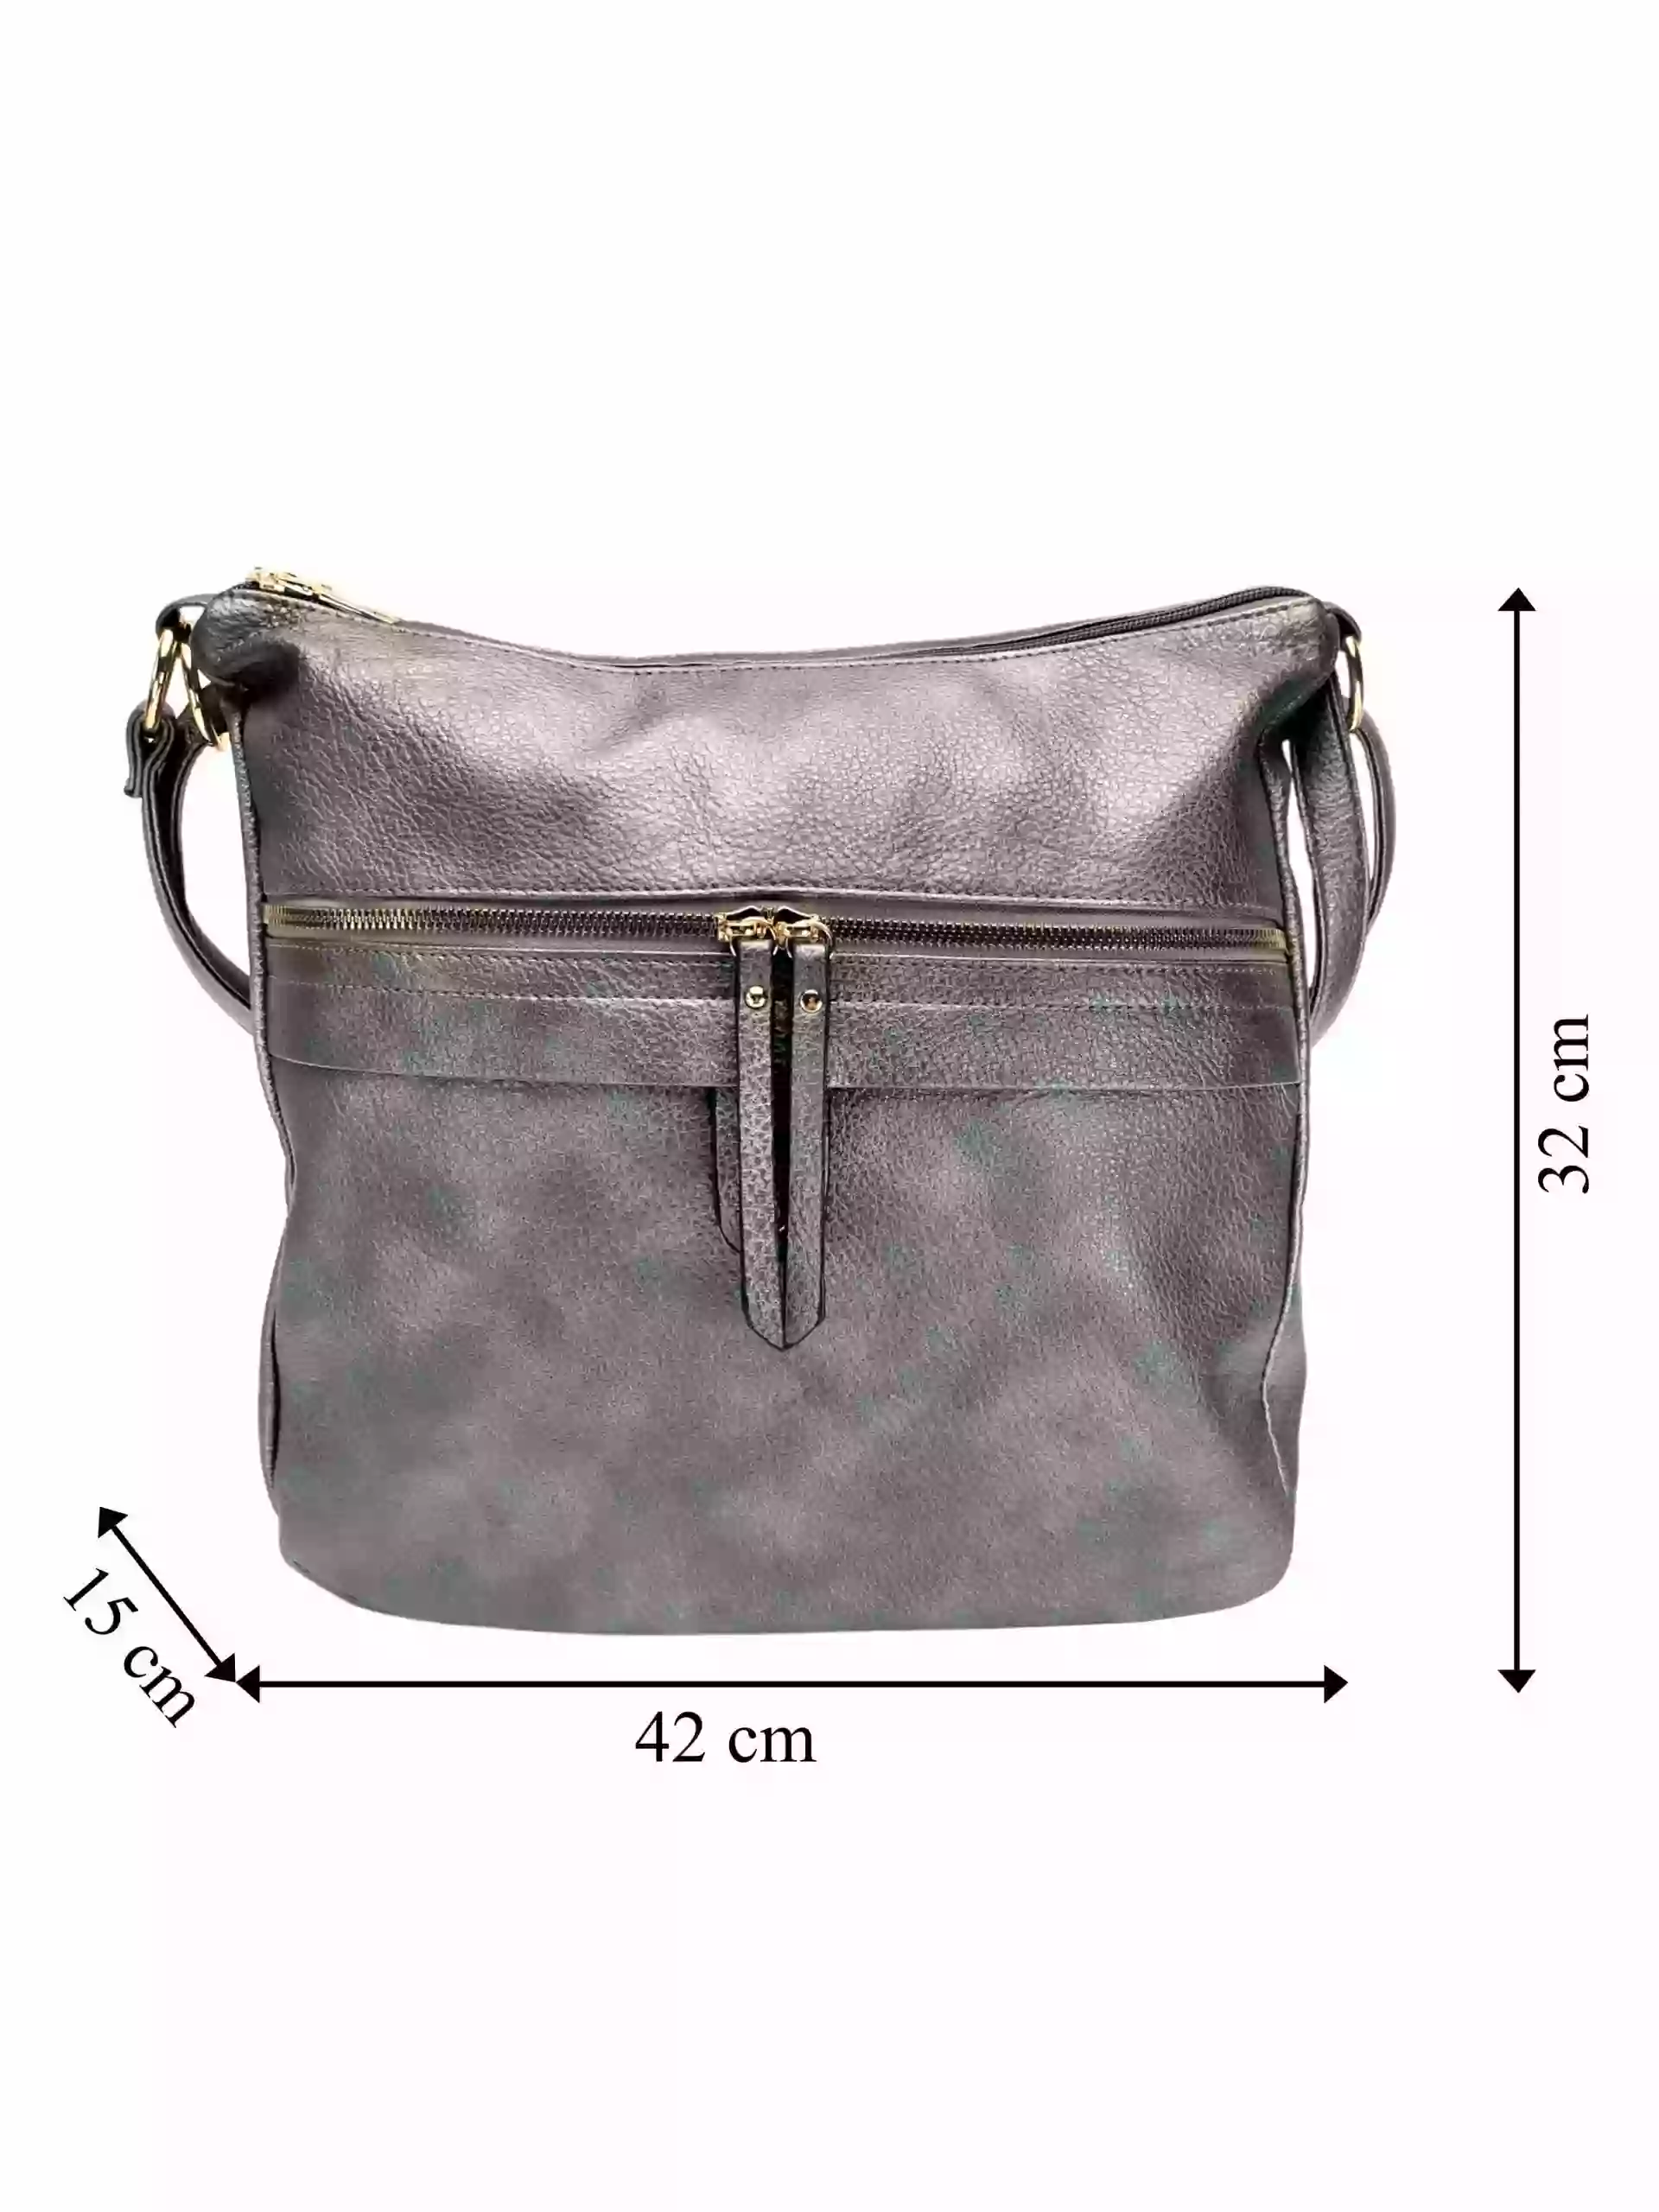 Velký stříbrný kabelko-batoh 2v1 s kapsou, Int. Company, H23, přední strana kabelko-batohu s rozměry